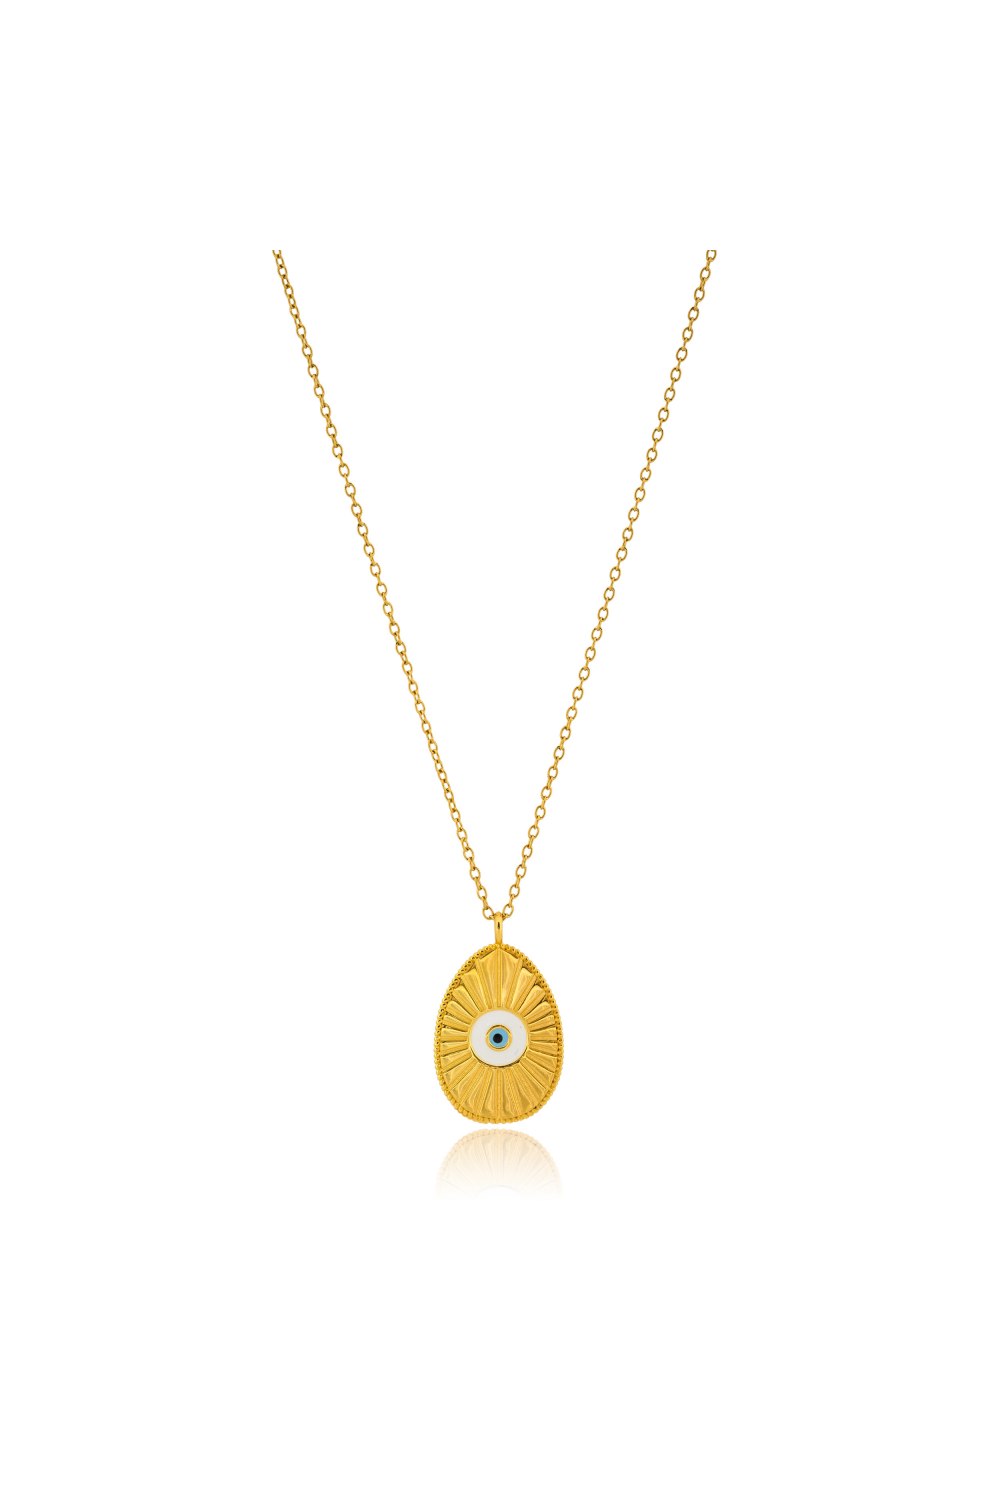 KESSARIS - Beaming Light Evil Eye Easter Pendant Necklace